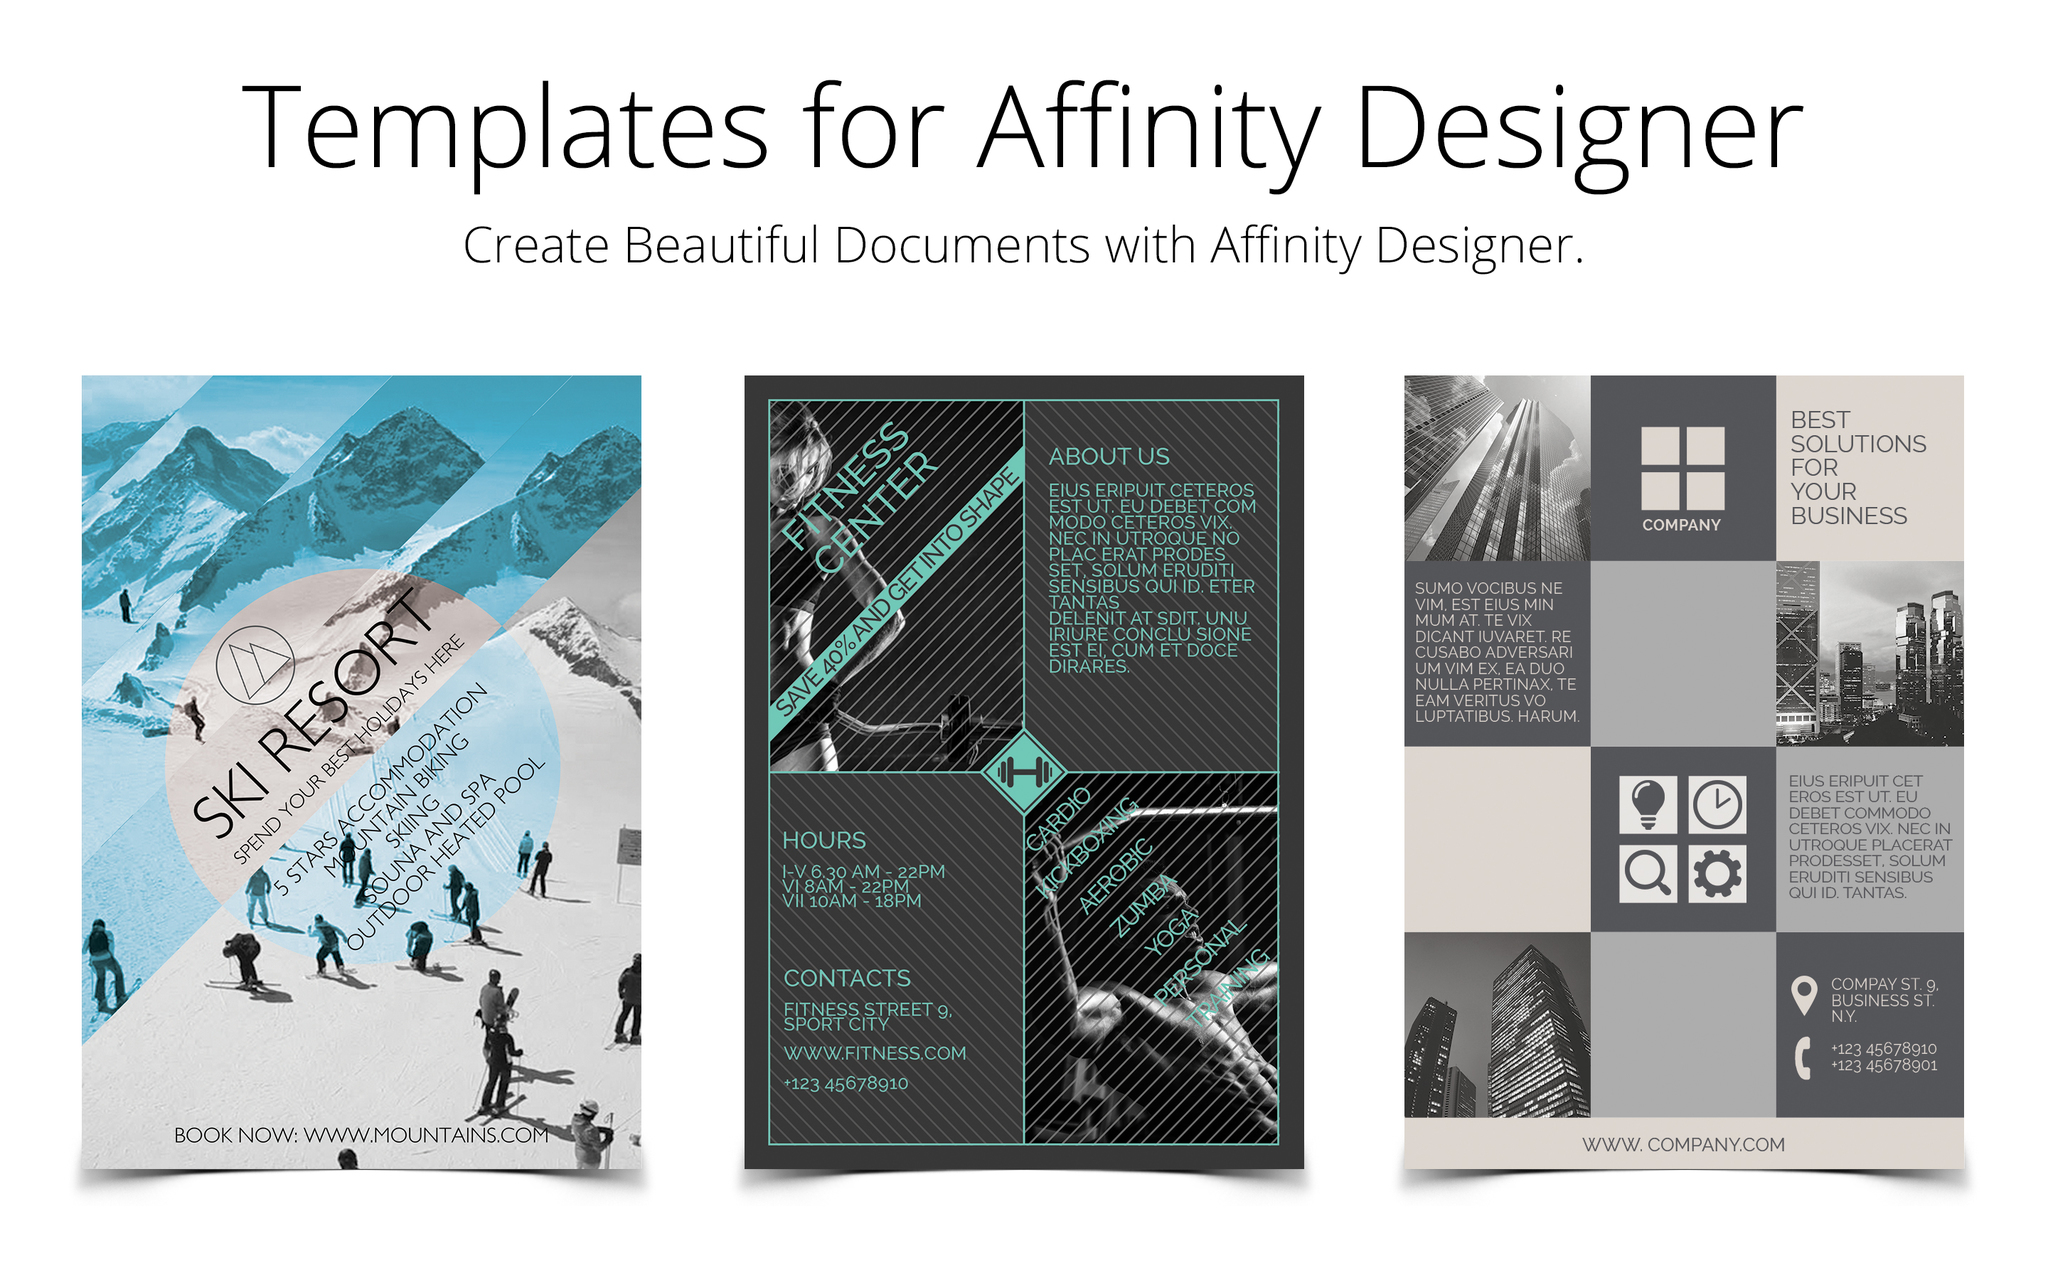 Affinity designer 1.6.1 for mac